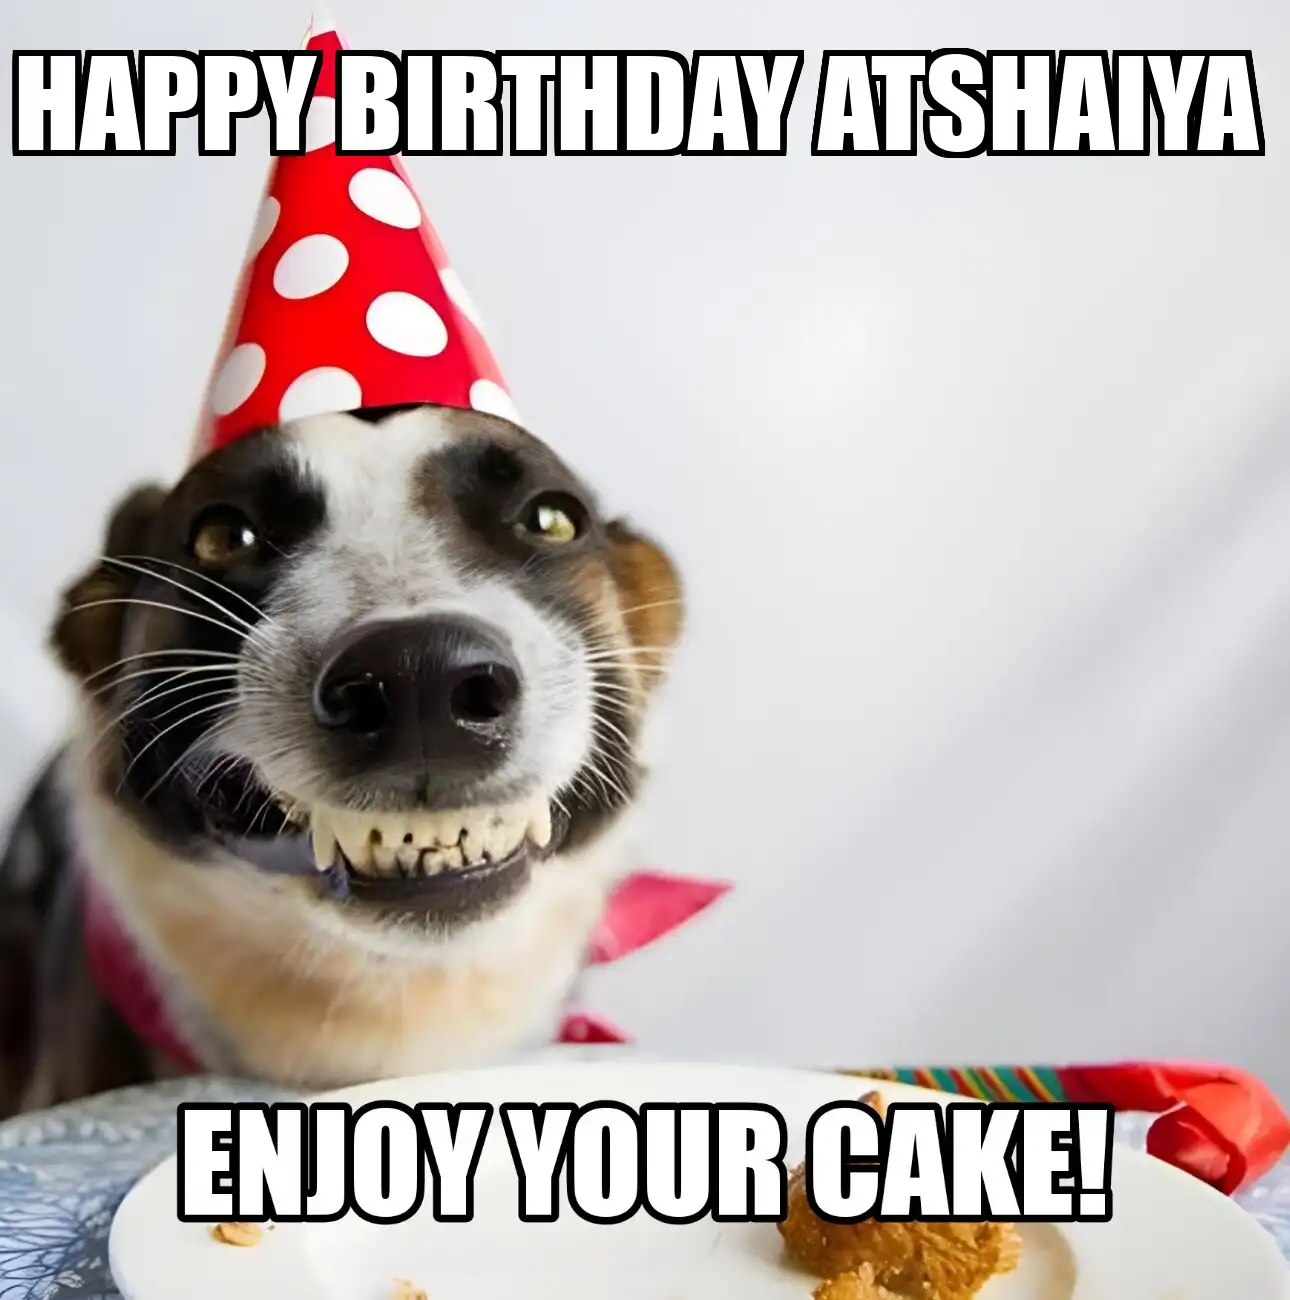 Happy Birthday Atshaiya Enjoy Your Cake Dog Meme